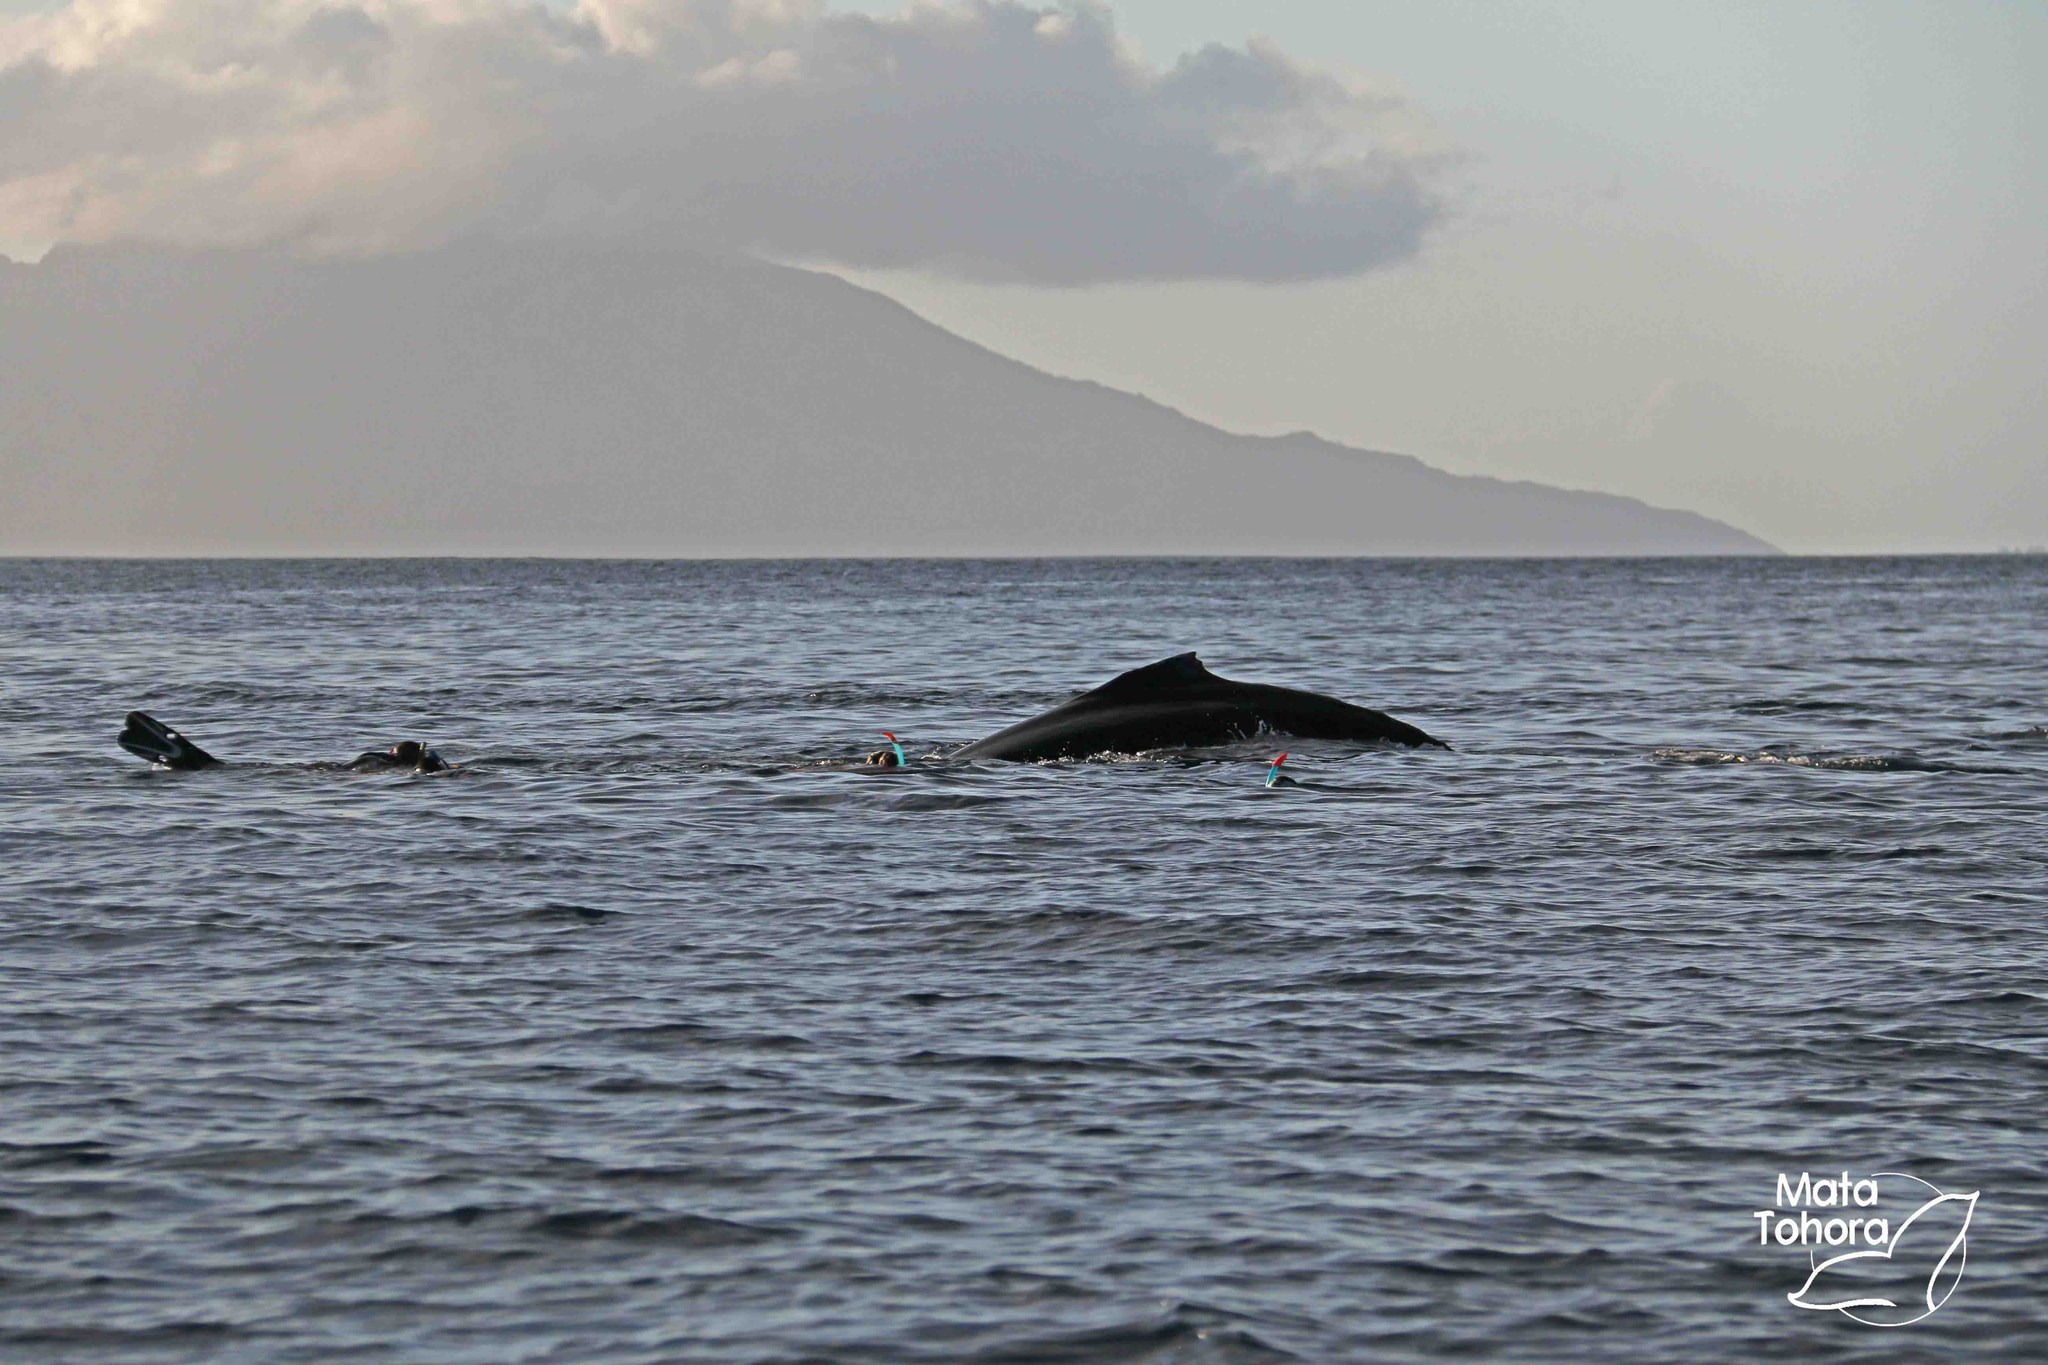 Le whale watching génère des pressions anthropiques fortes sur les baleines. Crédit photo : Mata Tohora.